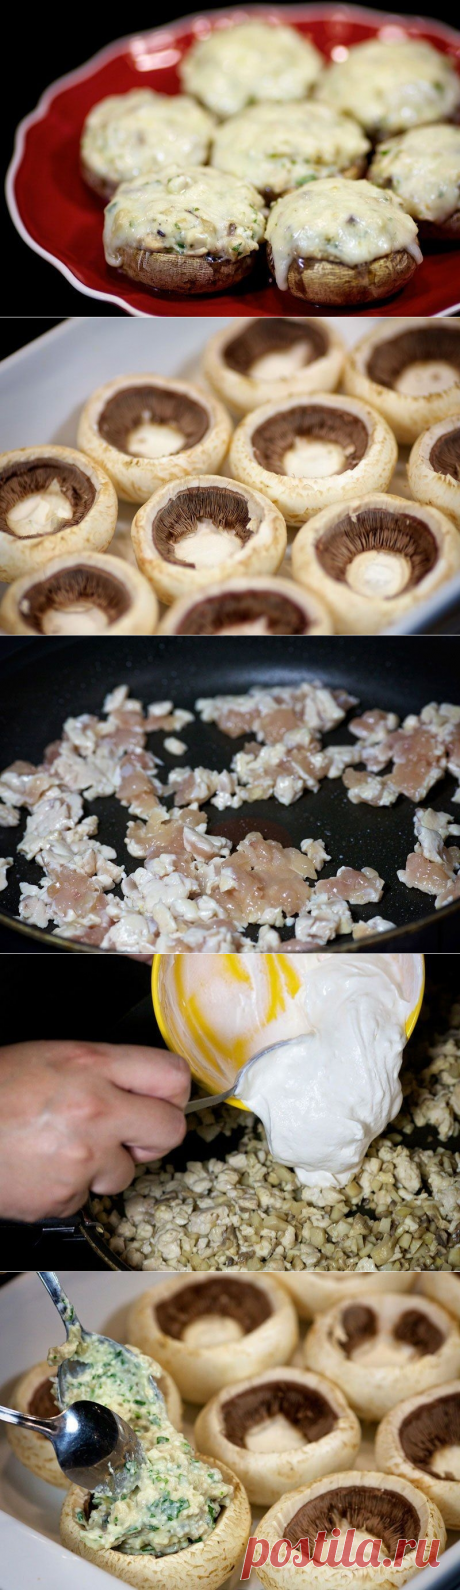 Как приготовить шампиньоны с курицей и сыром - рецепт, ингридиенты и фотографии